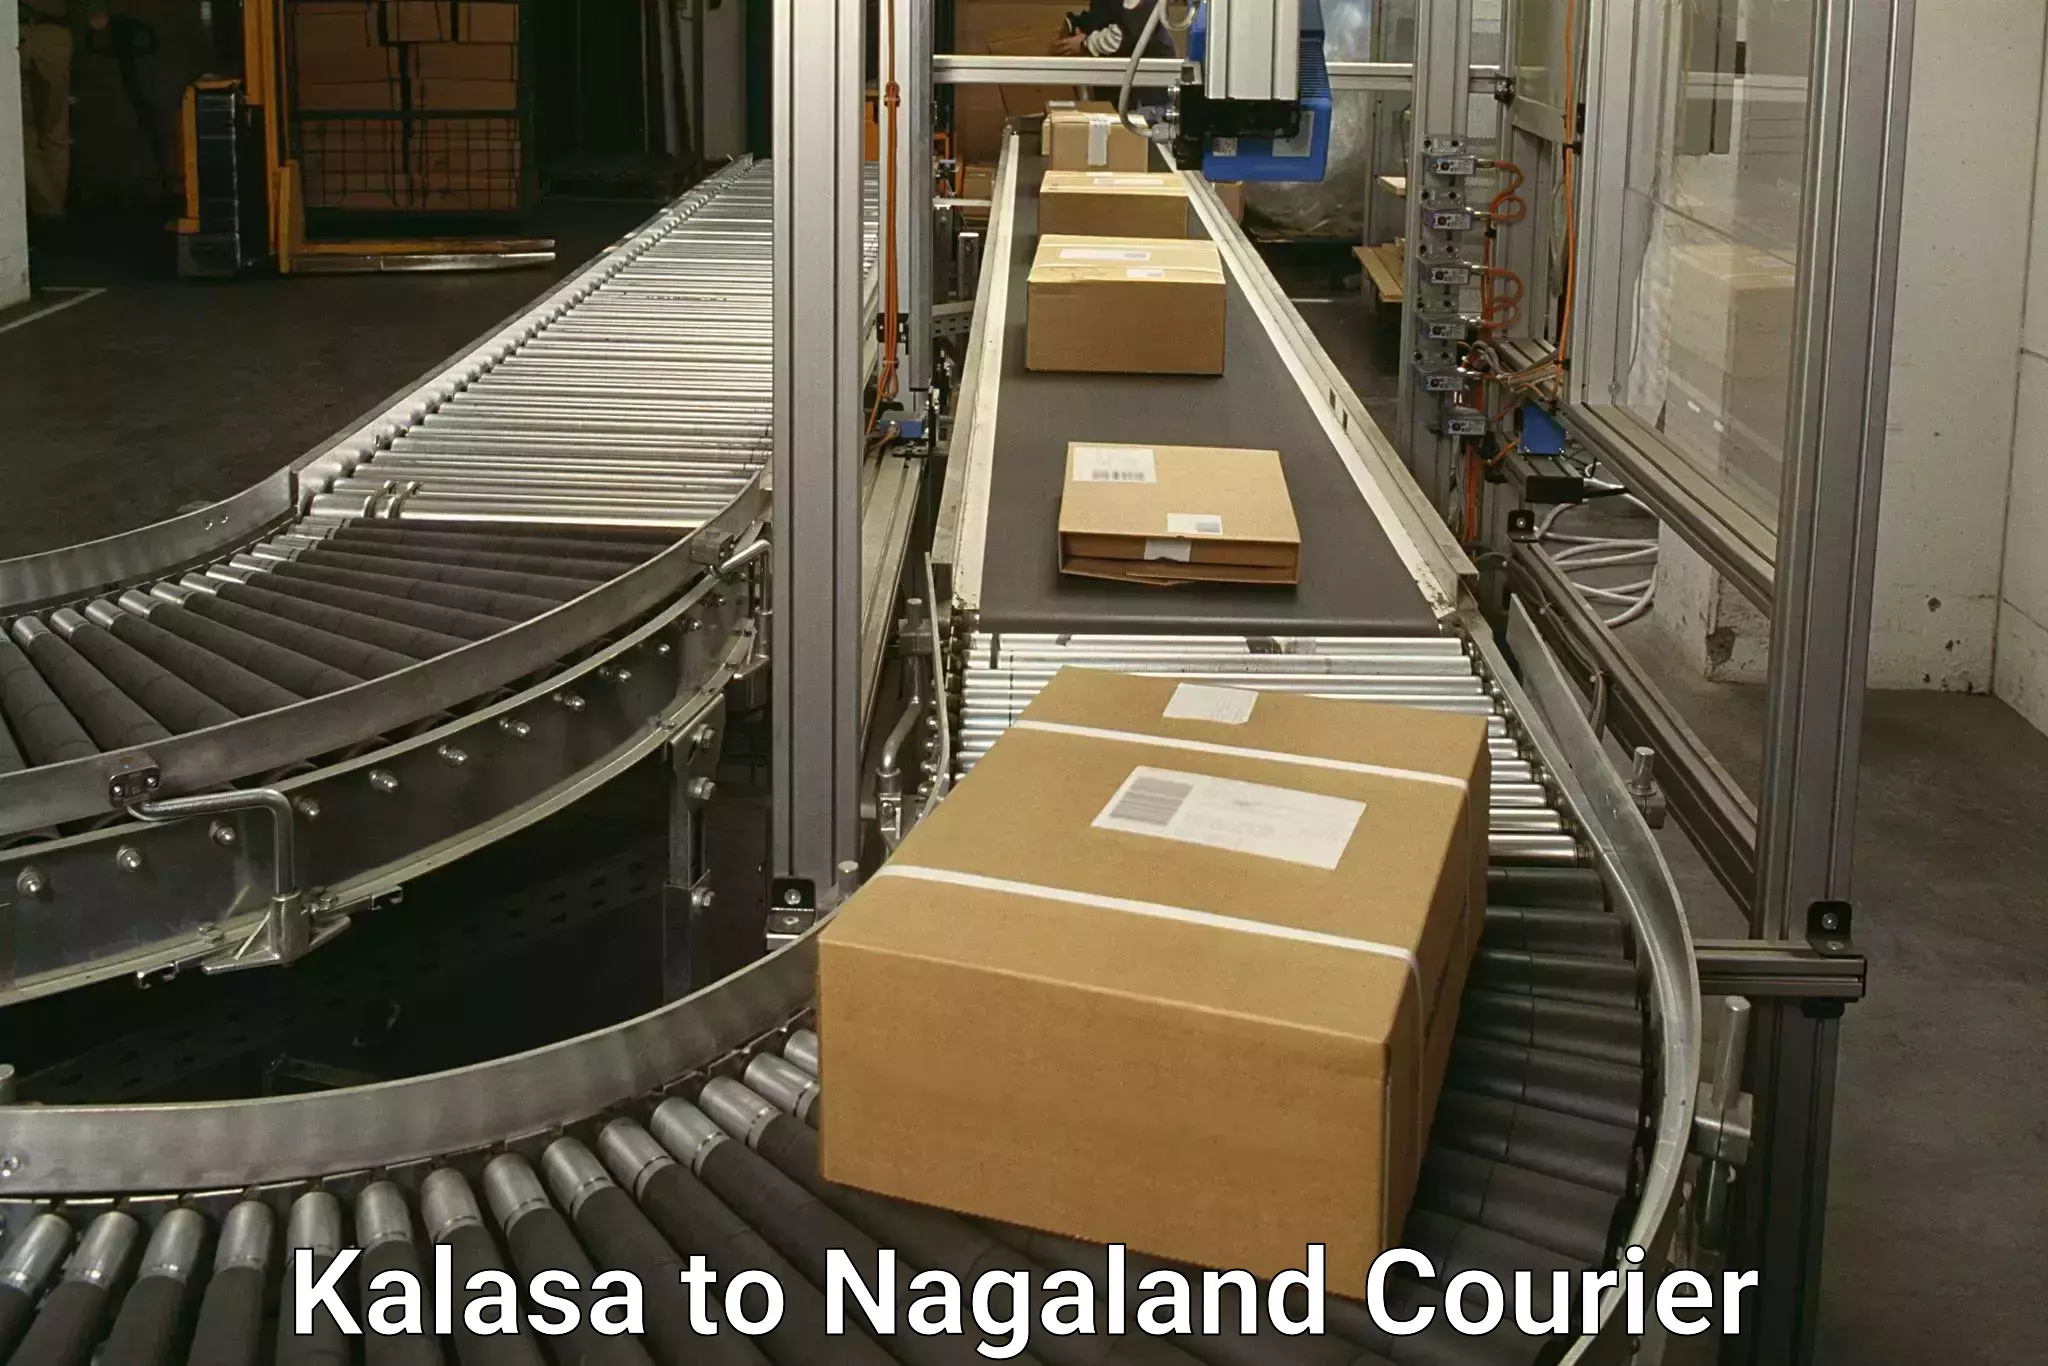 Pharmaceutical courier Kalasa to Kohima